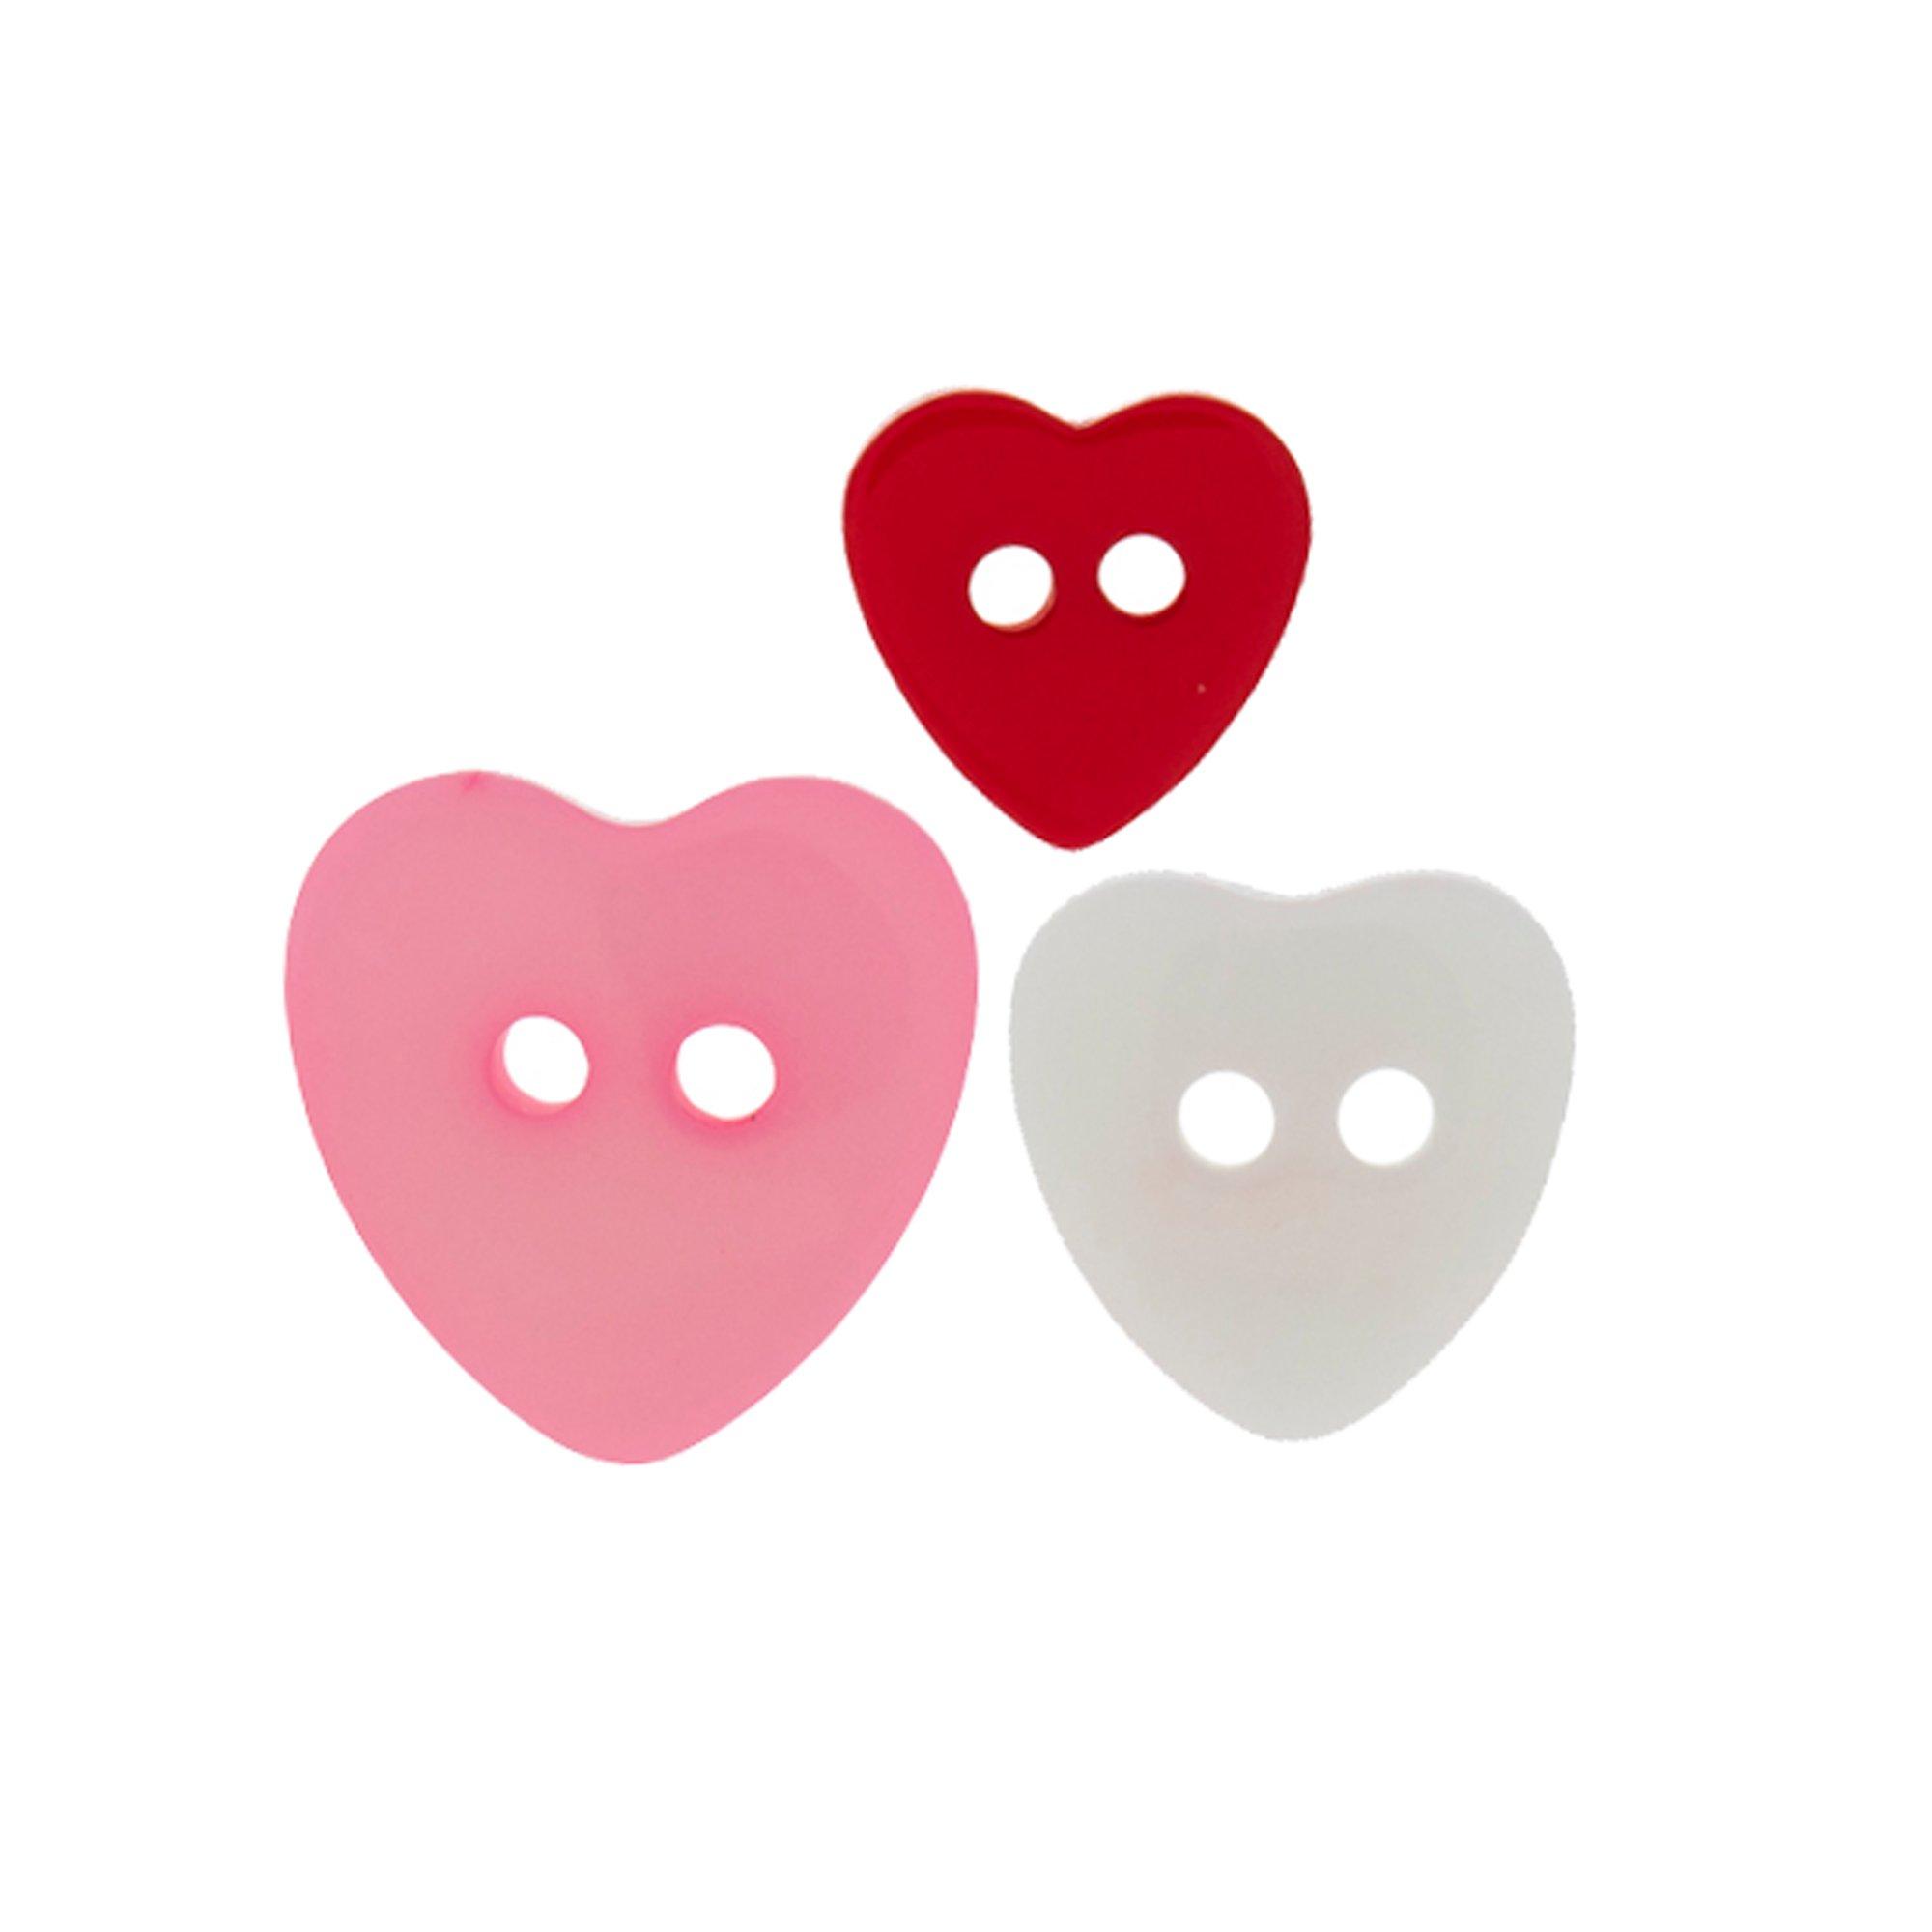 Heart Buttons, Hobby Lobby